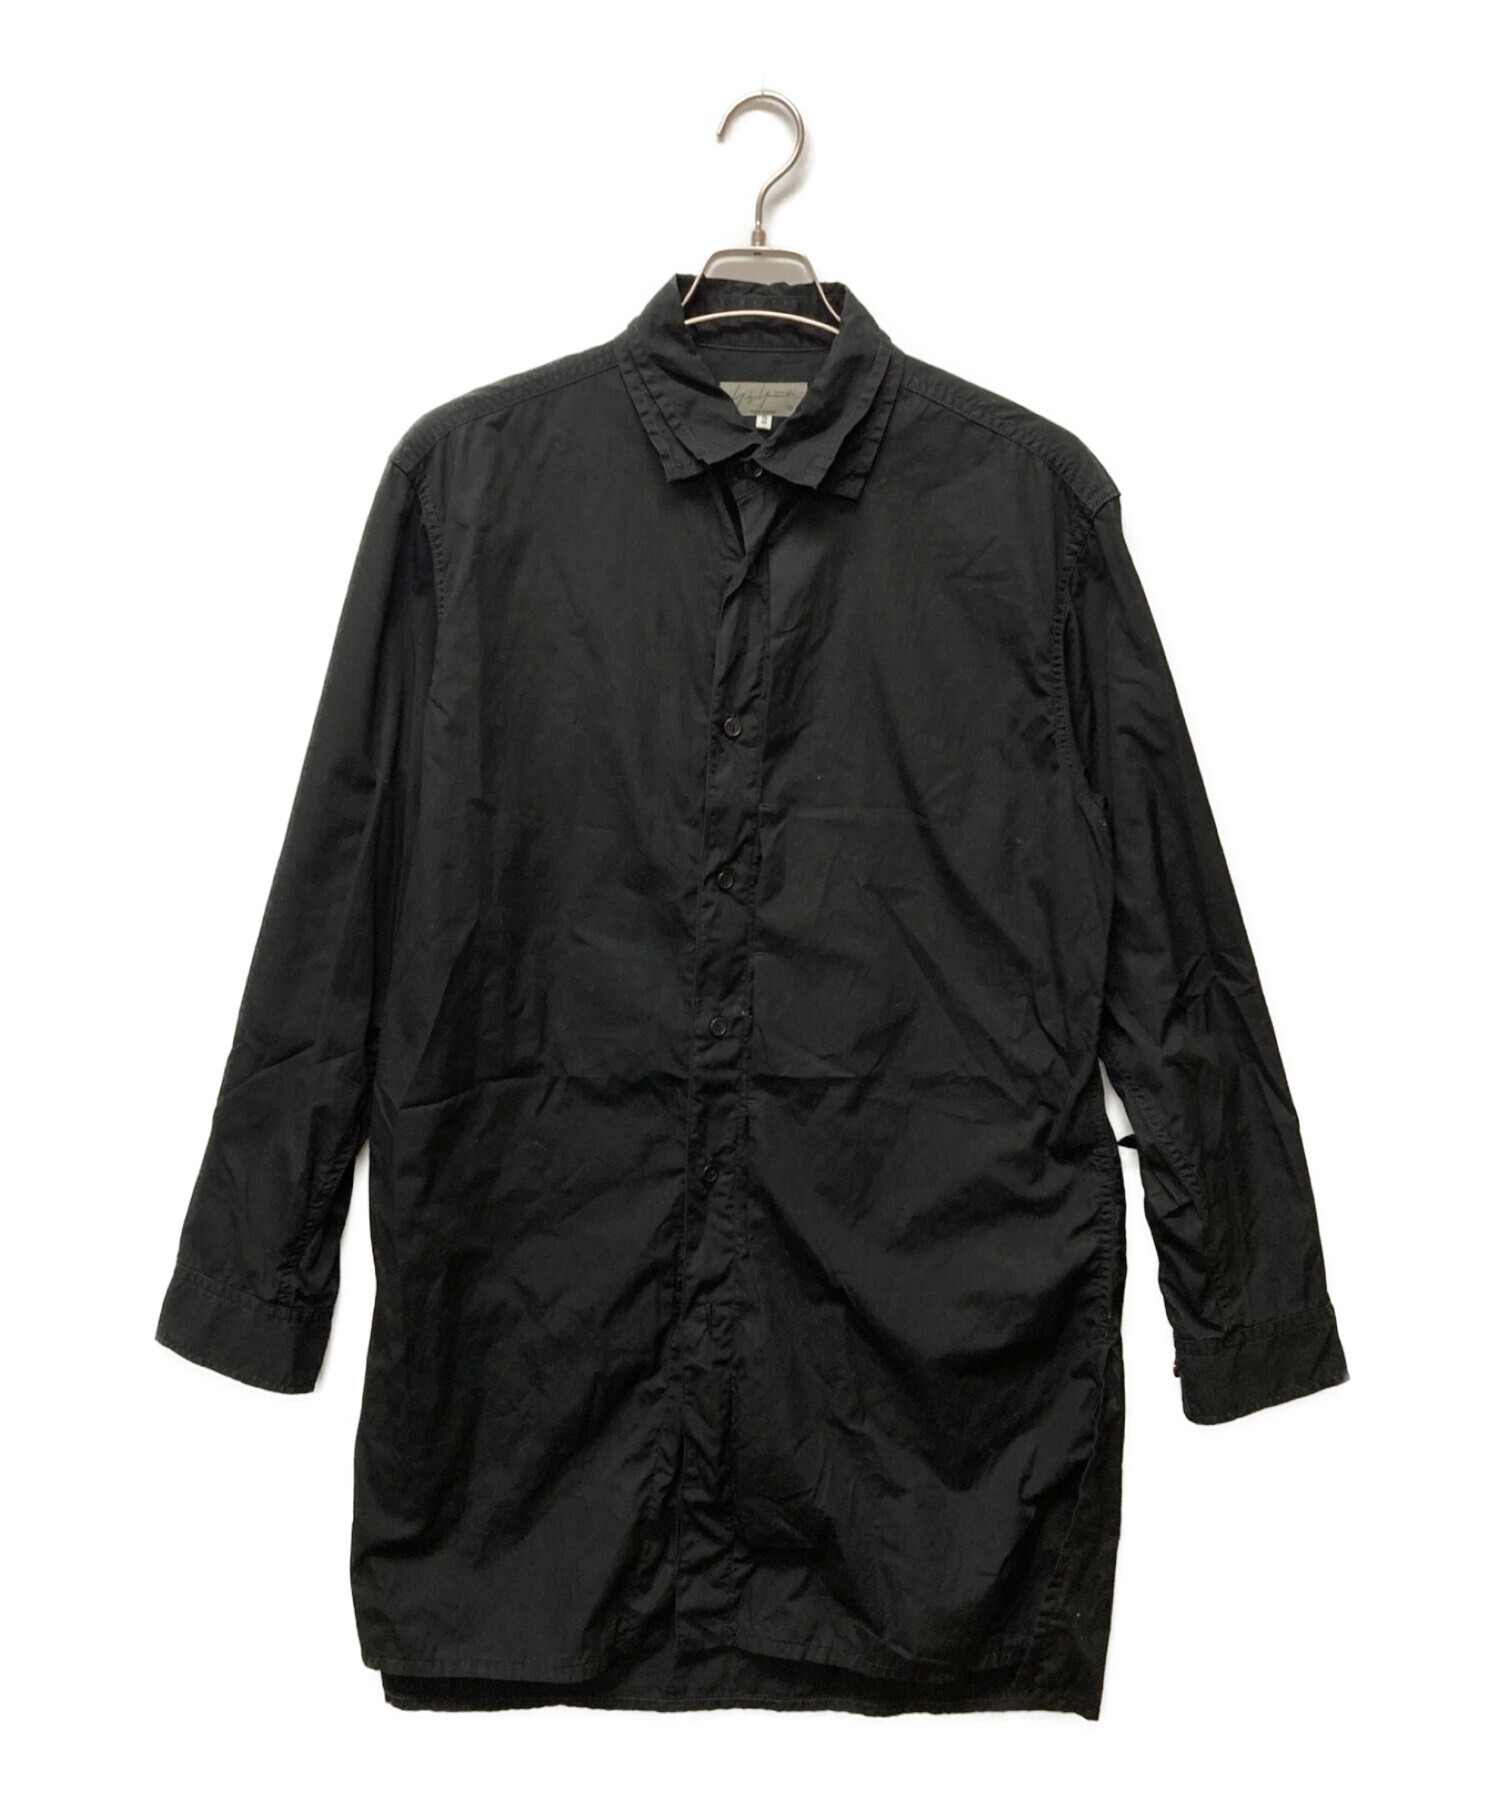 Yohji Yamamoto pour homme (ヨウジヤマモト プールオム) 二十襟ロングシャツ ブラック サイズ:2